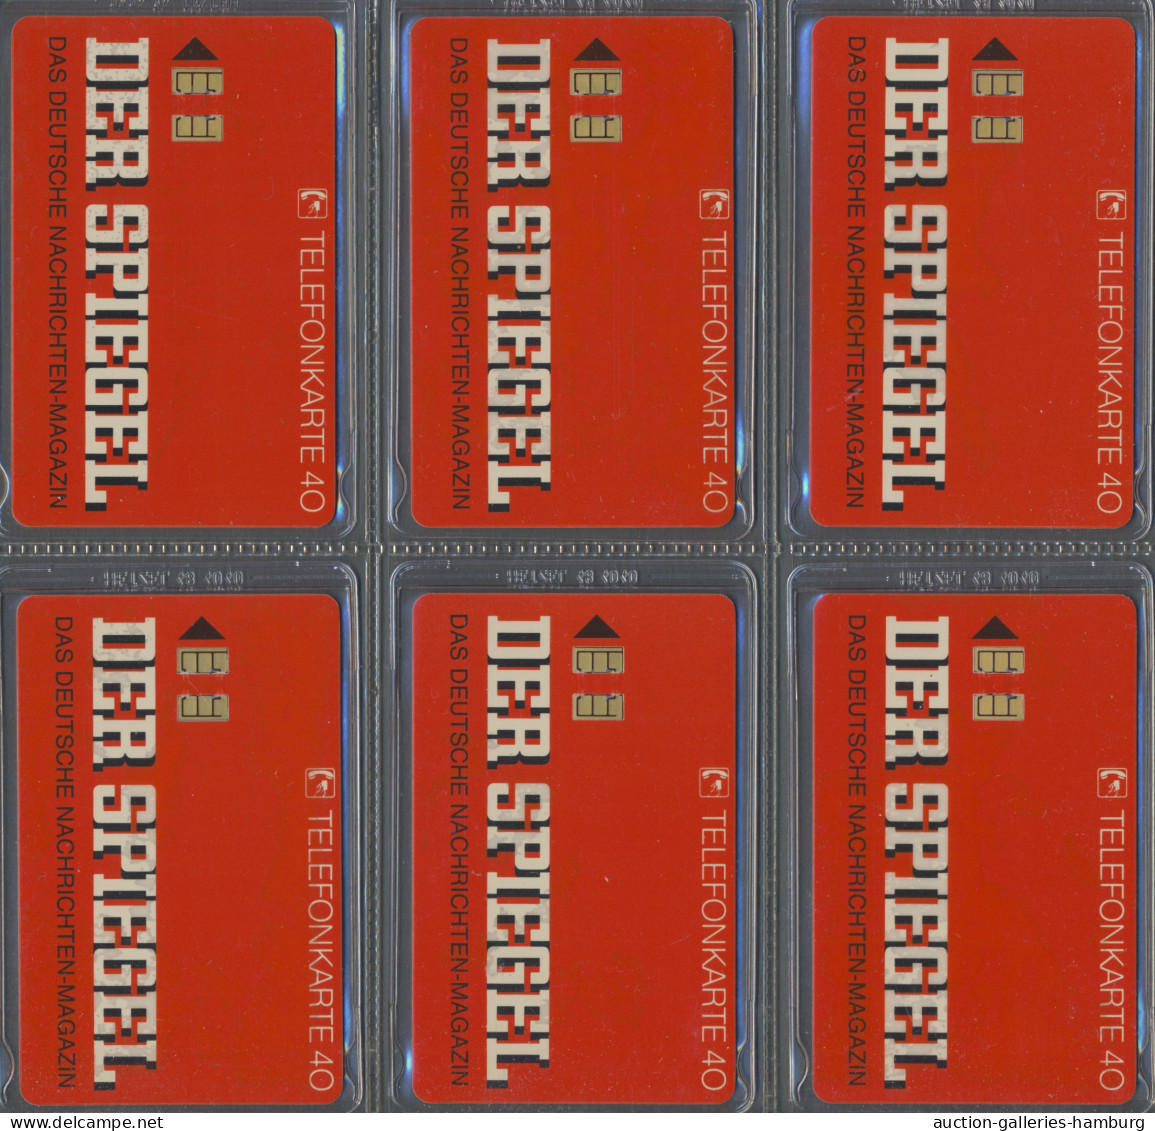 Telefonkarten: 1991-1995, Partie von etwa 250 deutschen Telefonkarten in einem A